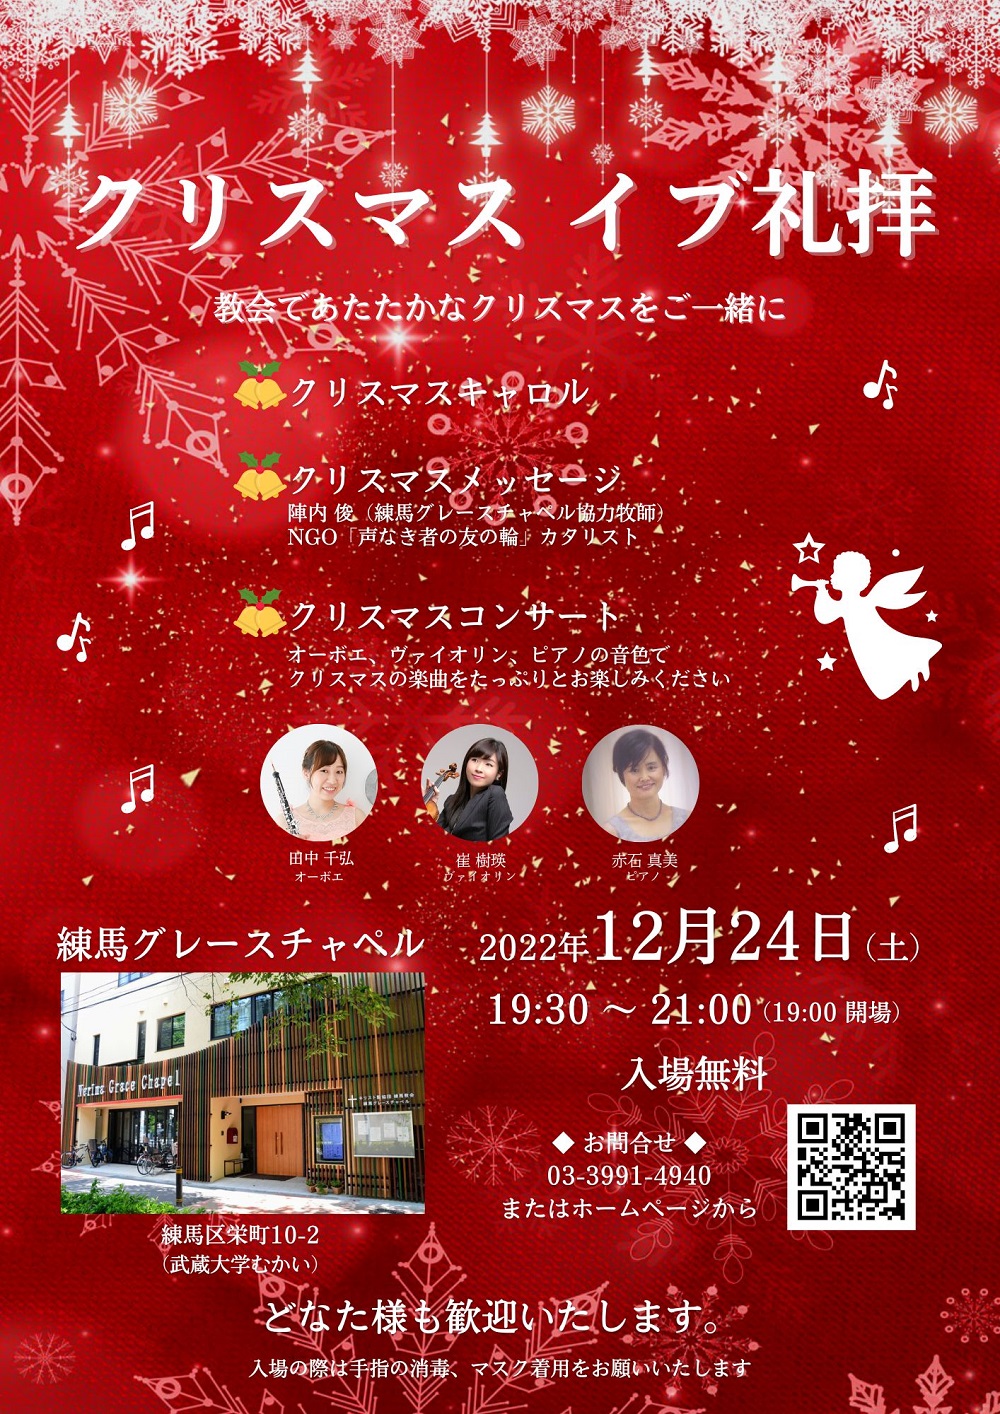 【出演情報】クリスマス礼拝コンサート＠練馬グレースチャペル